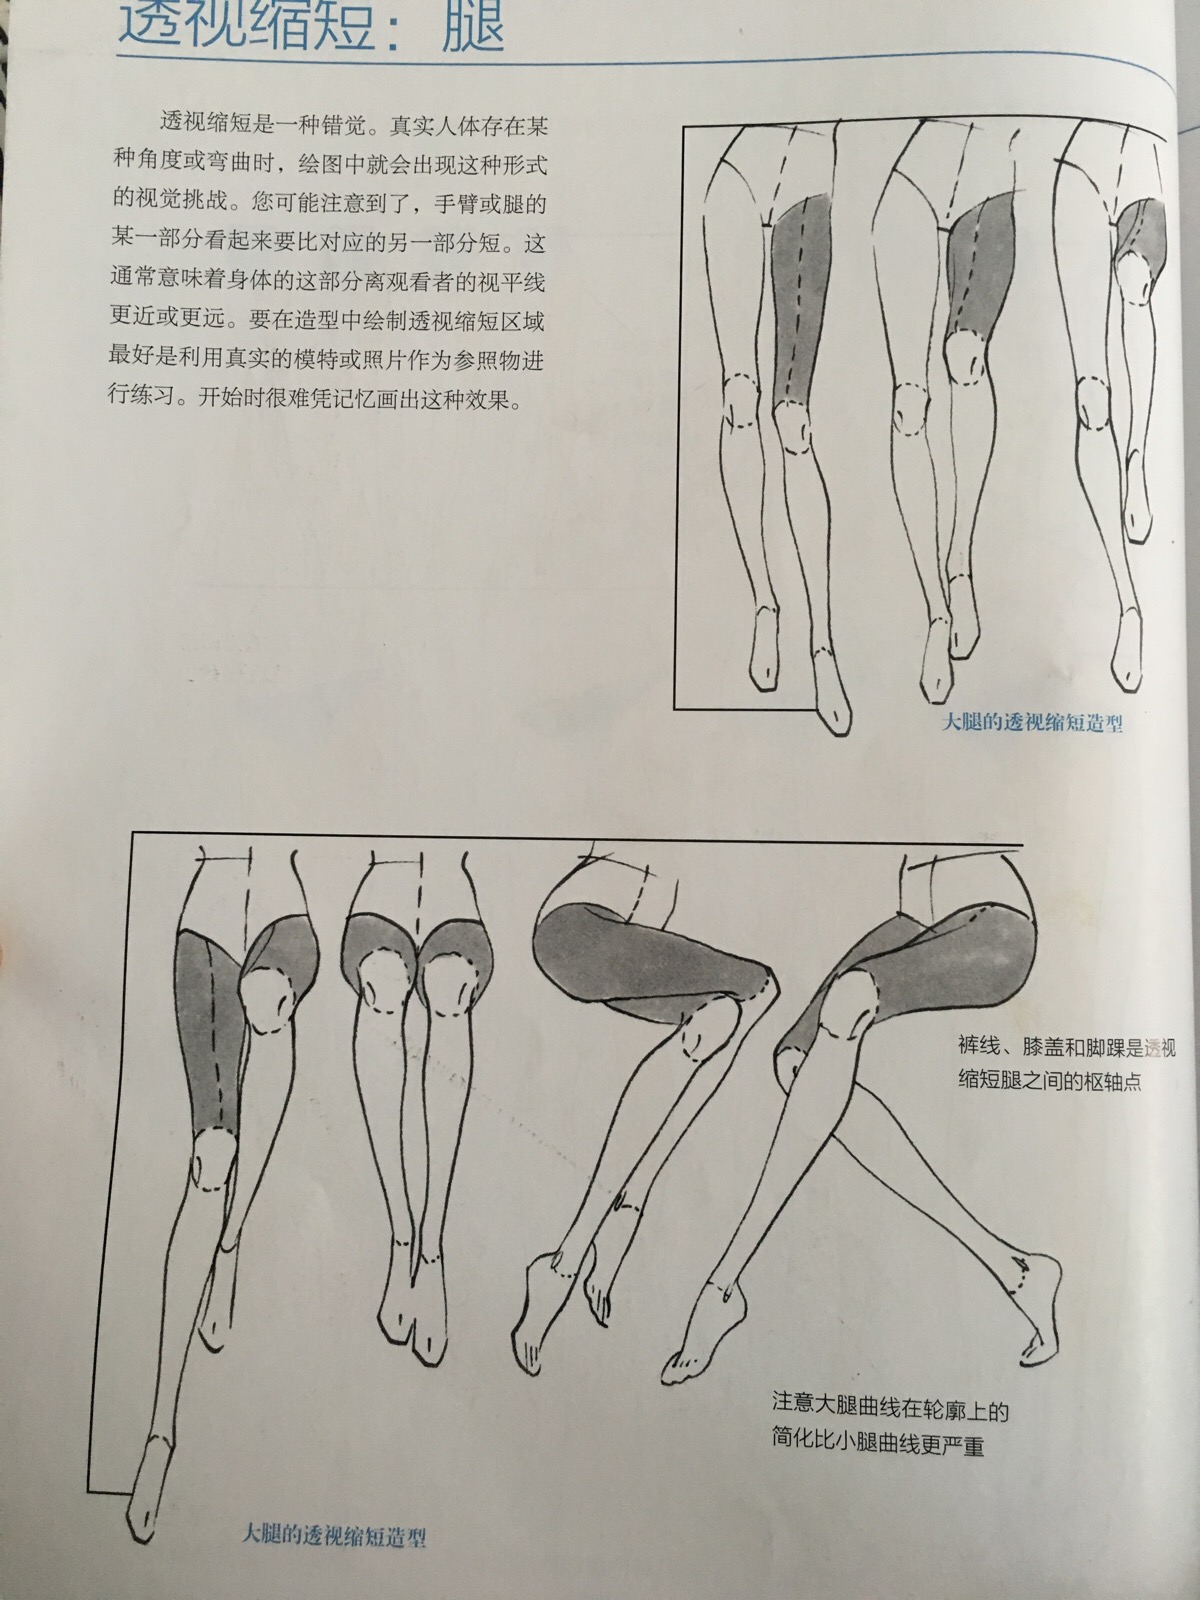 《美国经典时装画技法》绘制腿